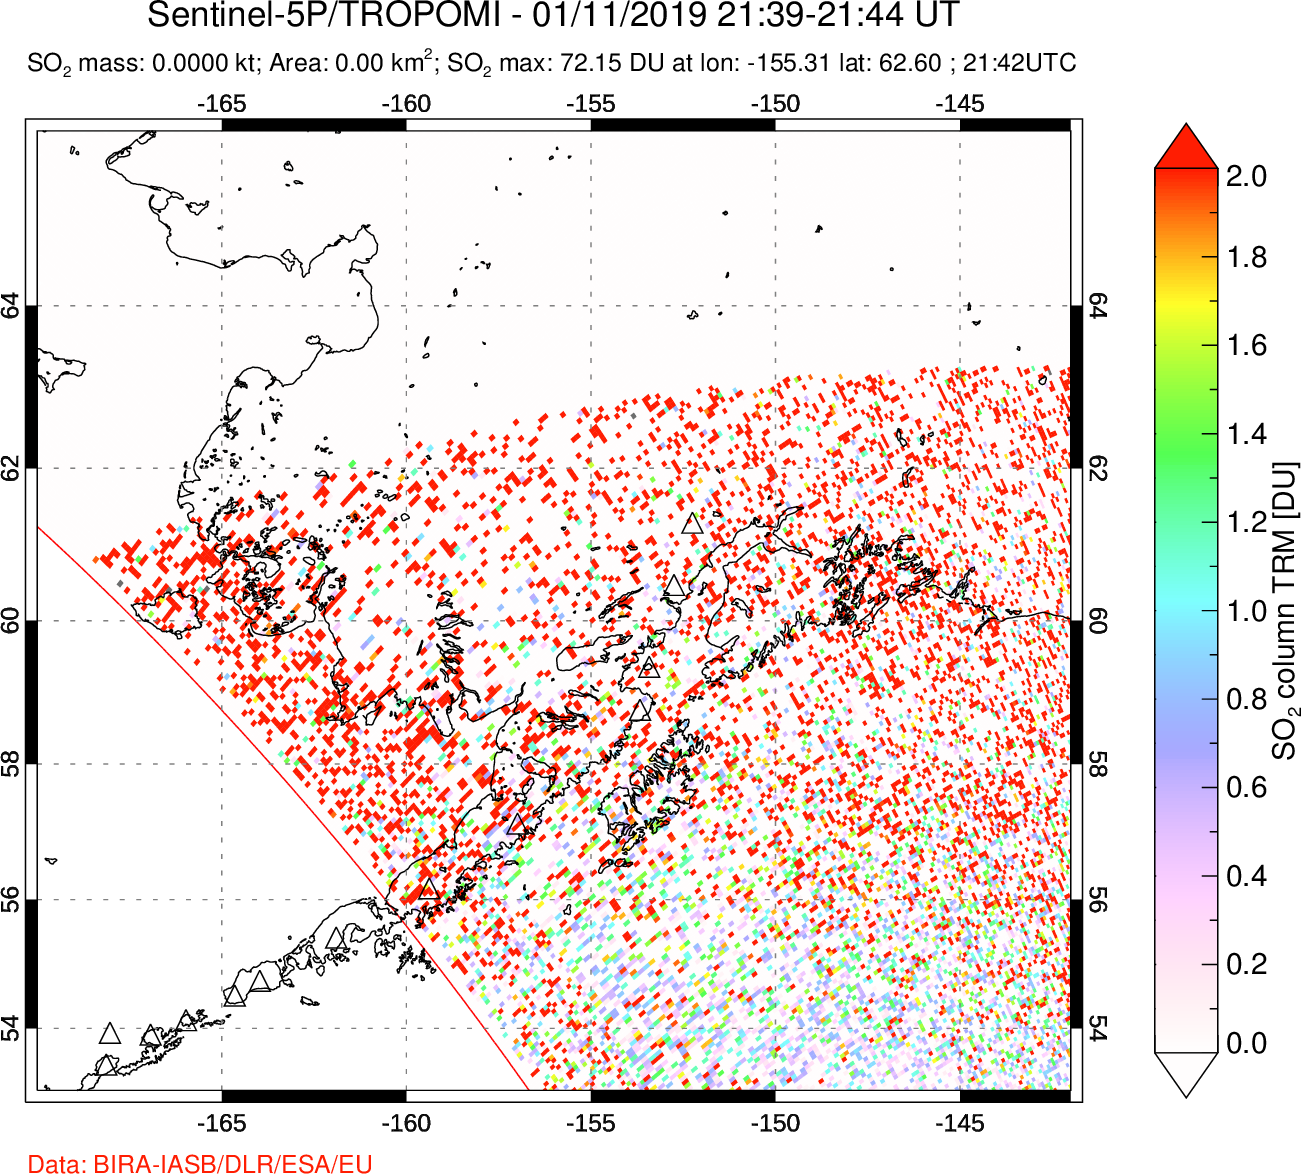 A sulfur dioxide image over Alaska, USA on Jan 11, 2019.